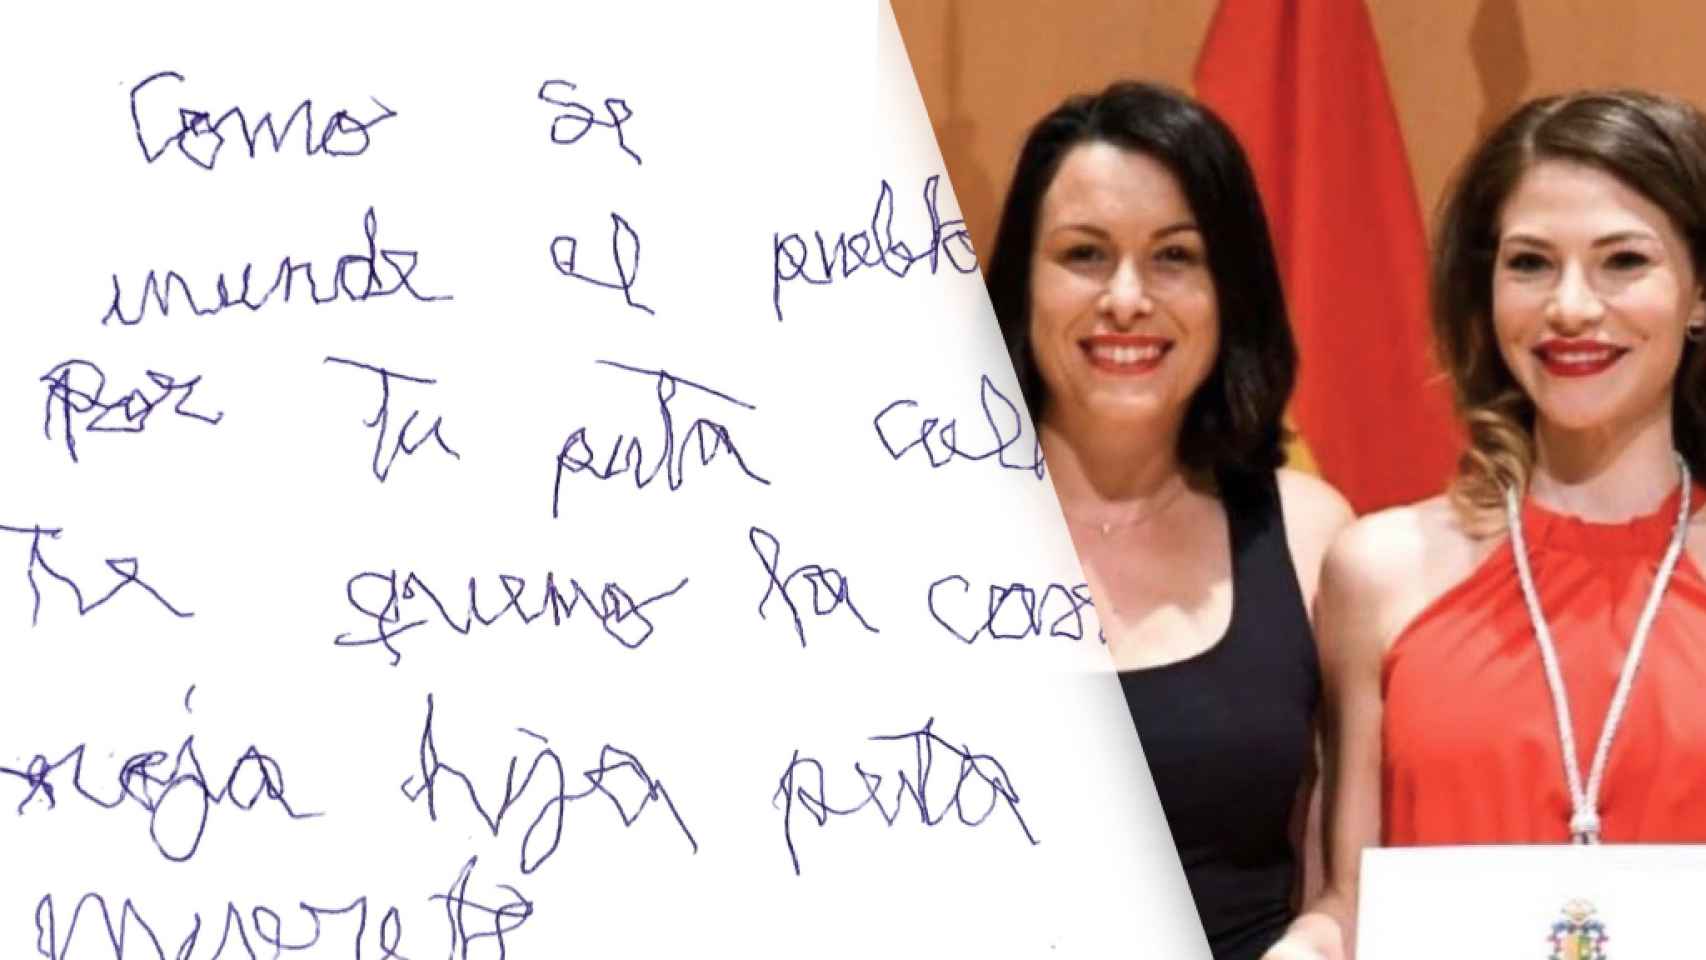 La nota amenazante recibida por Aynara Navarro, derecha, junto a la alcaldesa de Orihuela Carolina Gracia.